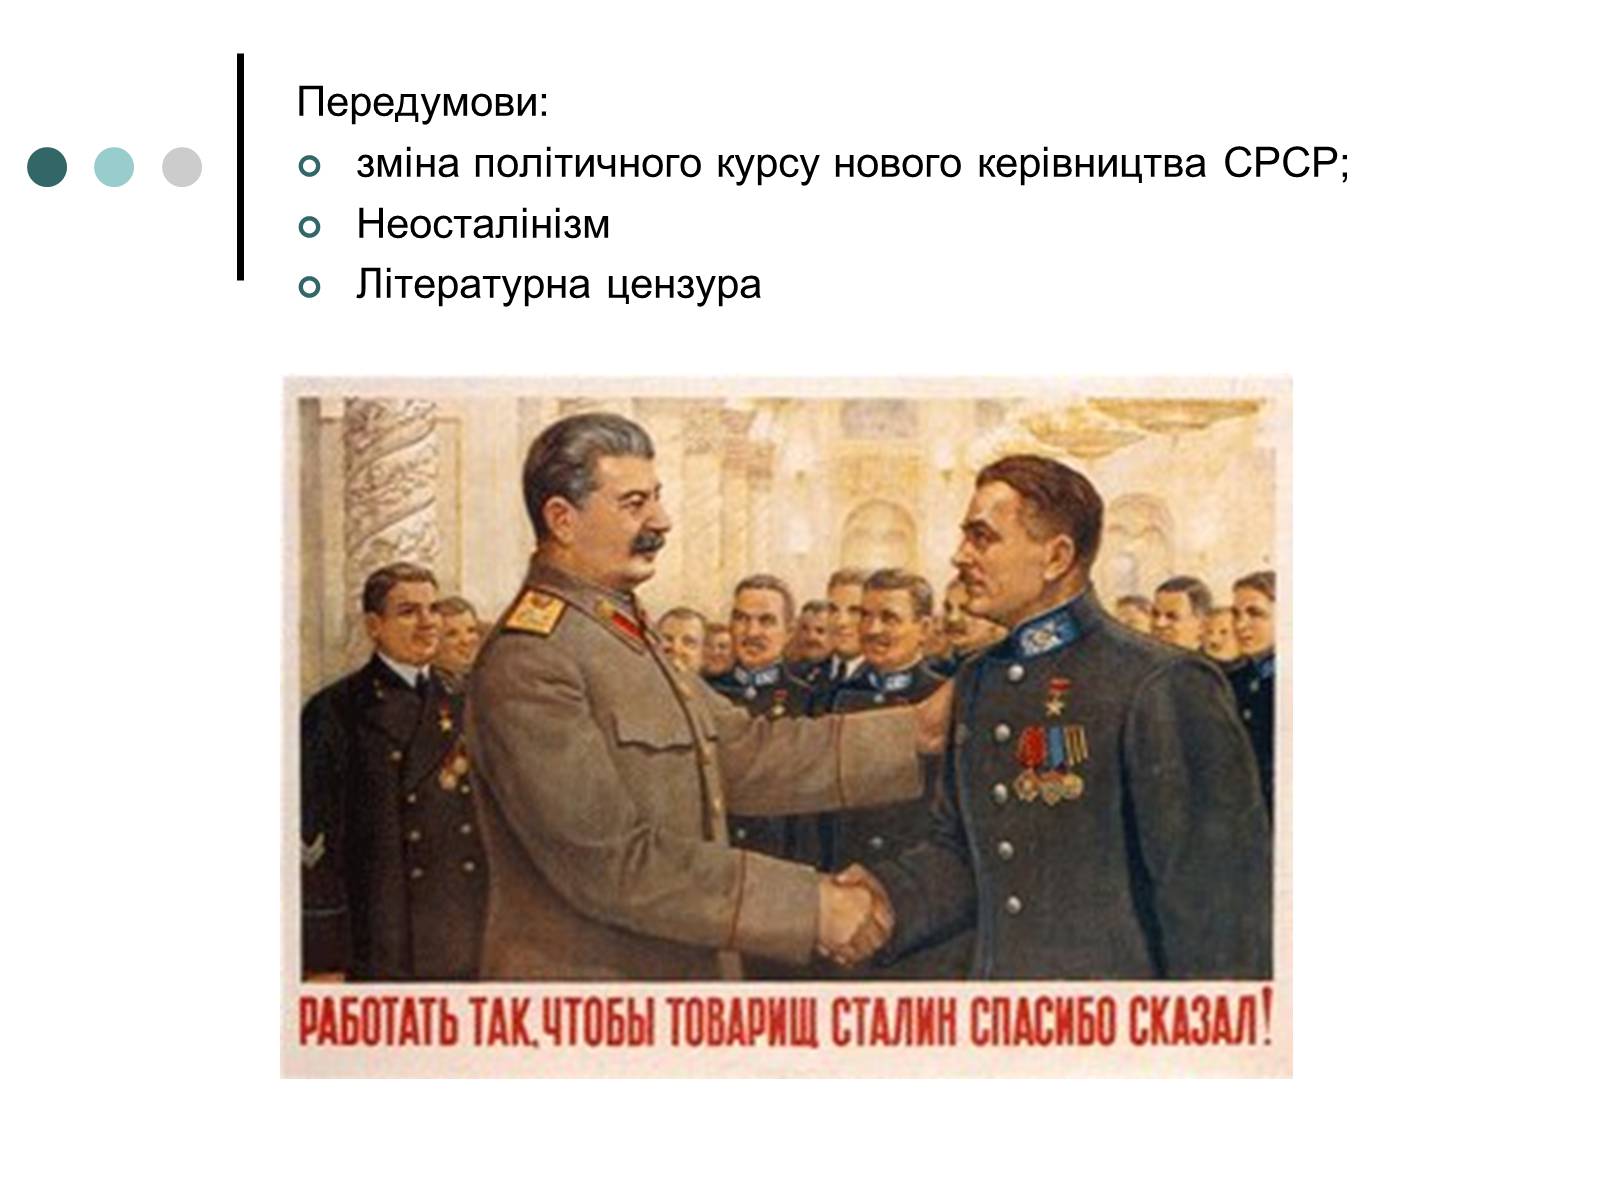 Россия всех сделала. Сталин спасибо сказал. Работать так чтобы товарищ Сталин спасибо сказал. Шутки Сталина.